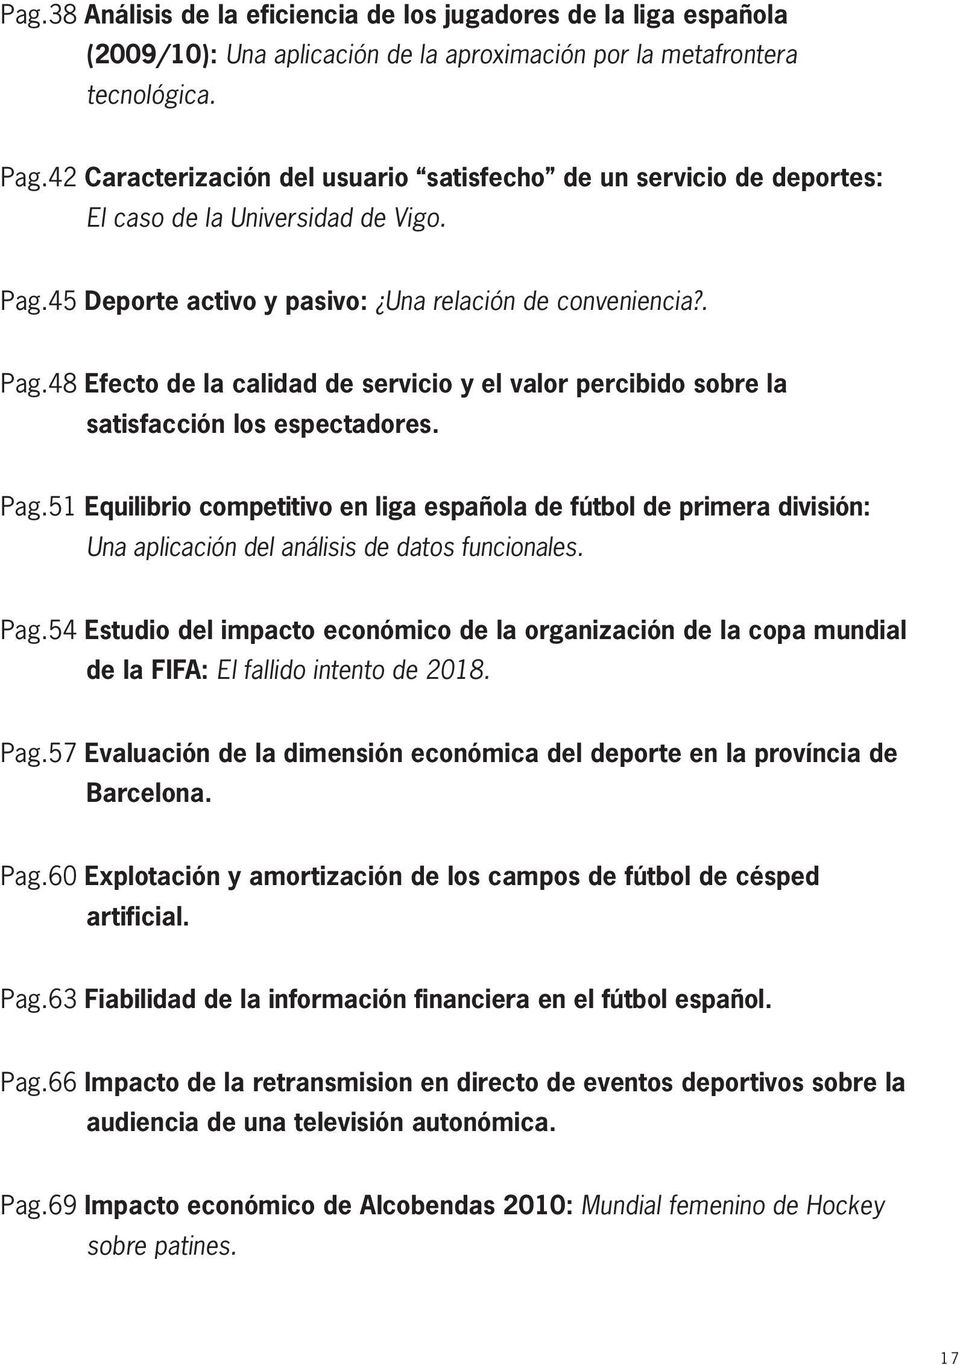 Pag.54 Estudio del impacto económico de la organización de la copa mundial de la FIFA: El fallido intento de 2018. Pag.57 Evaluación de la dimensión económica del deporte en la província de Barcelona.